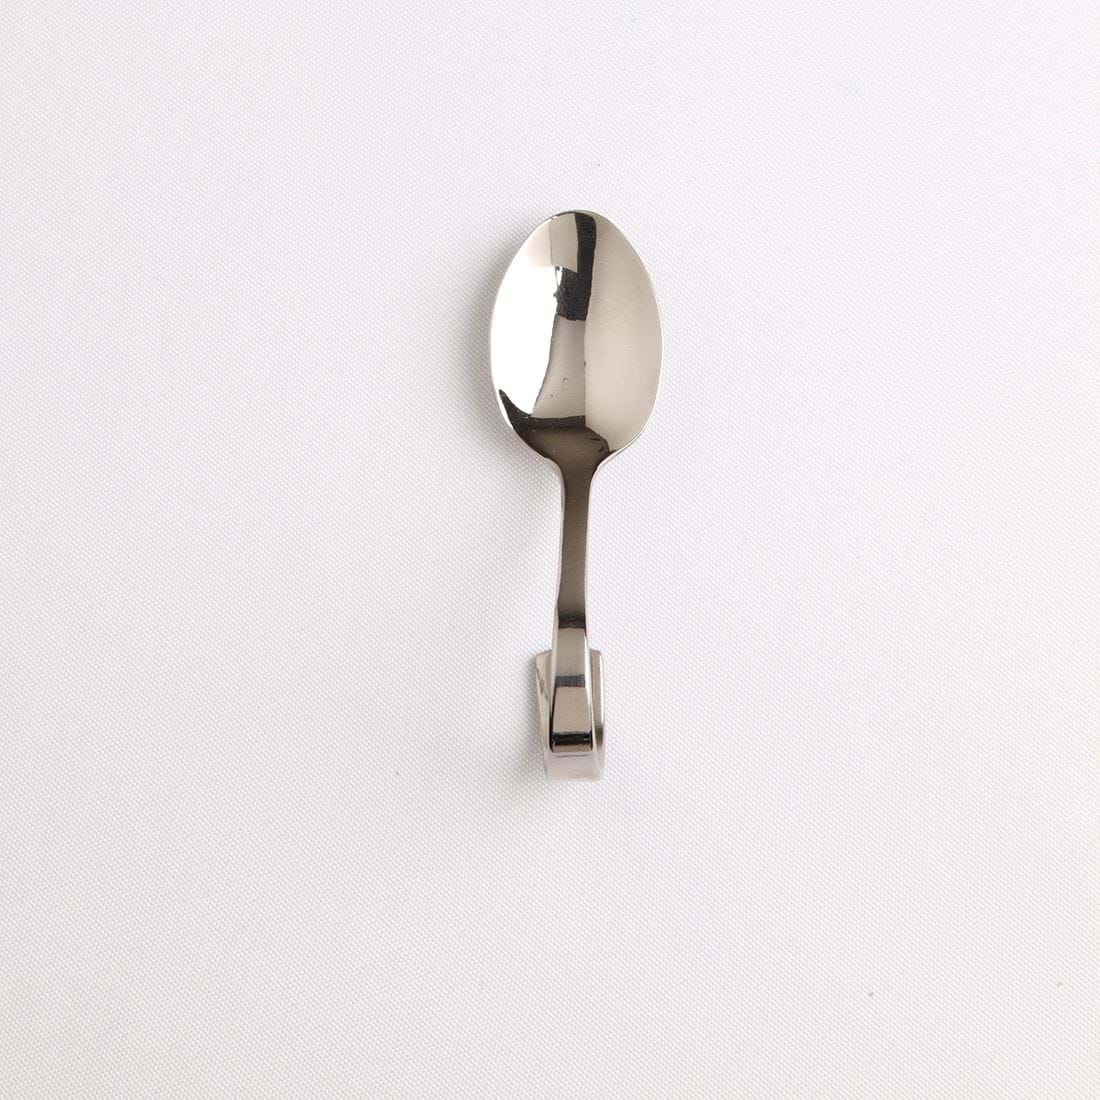 Small amuse bouche spoon